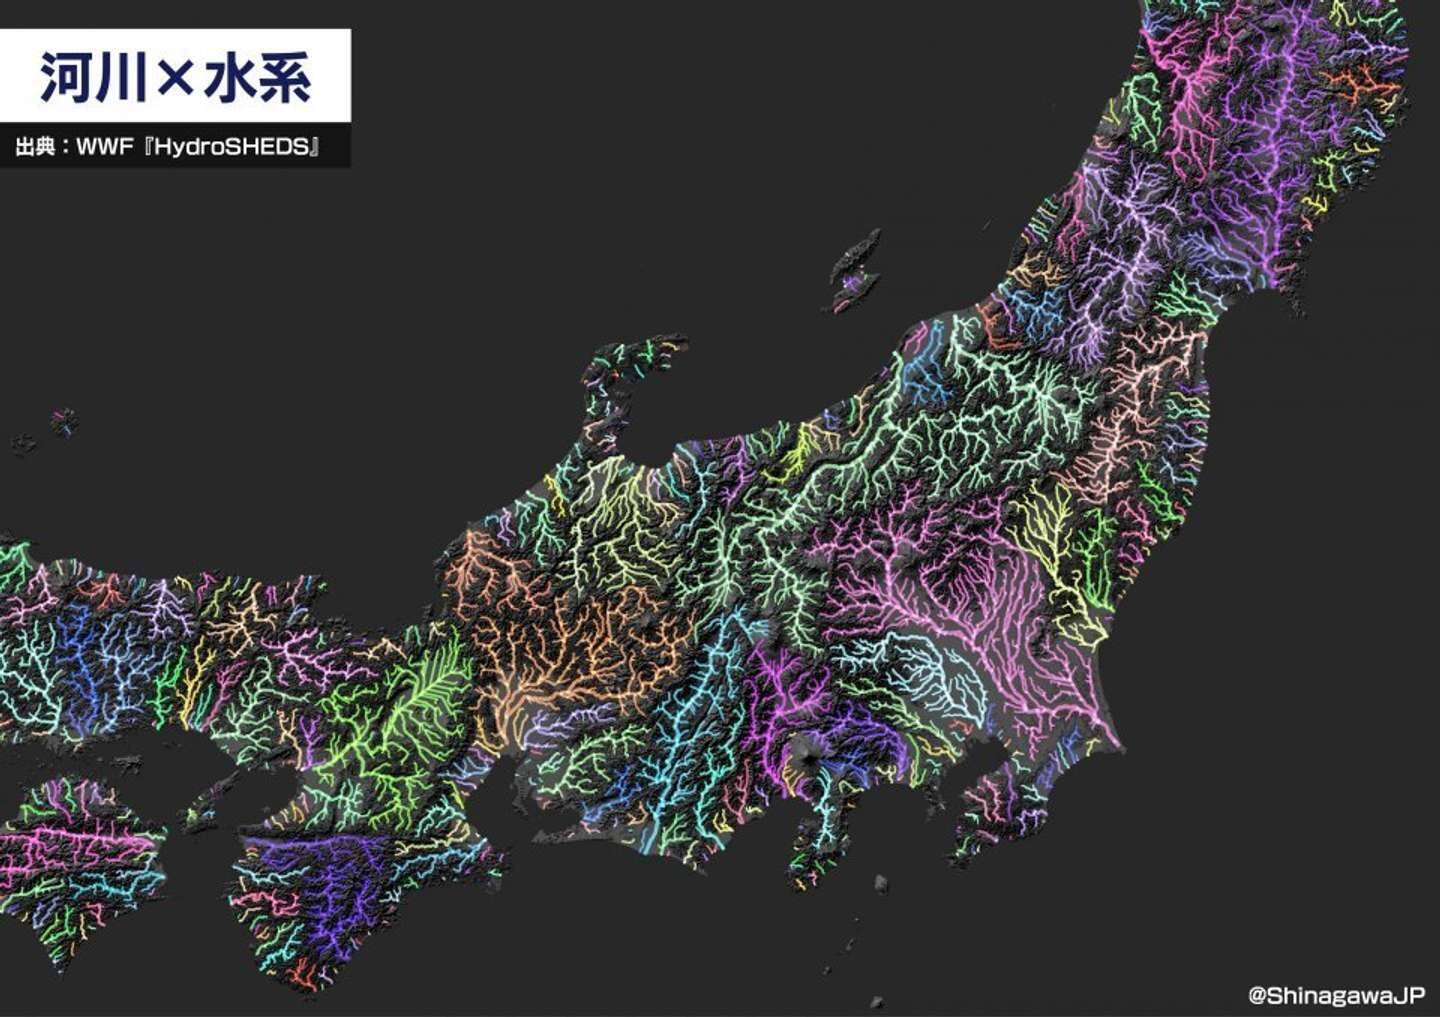 まさに日本列島の 血管 だ 川だけで描いた地図 からあふれ出す生命力がすごすぎる 21年6月17日 エキサイトニュース